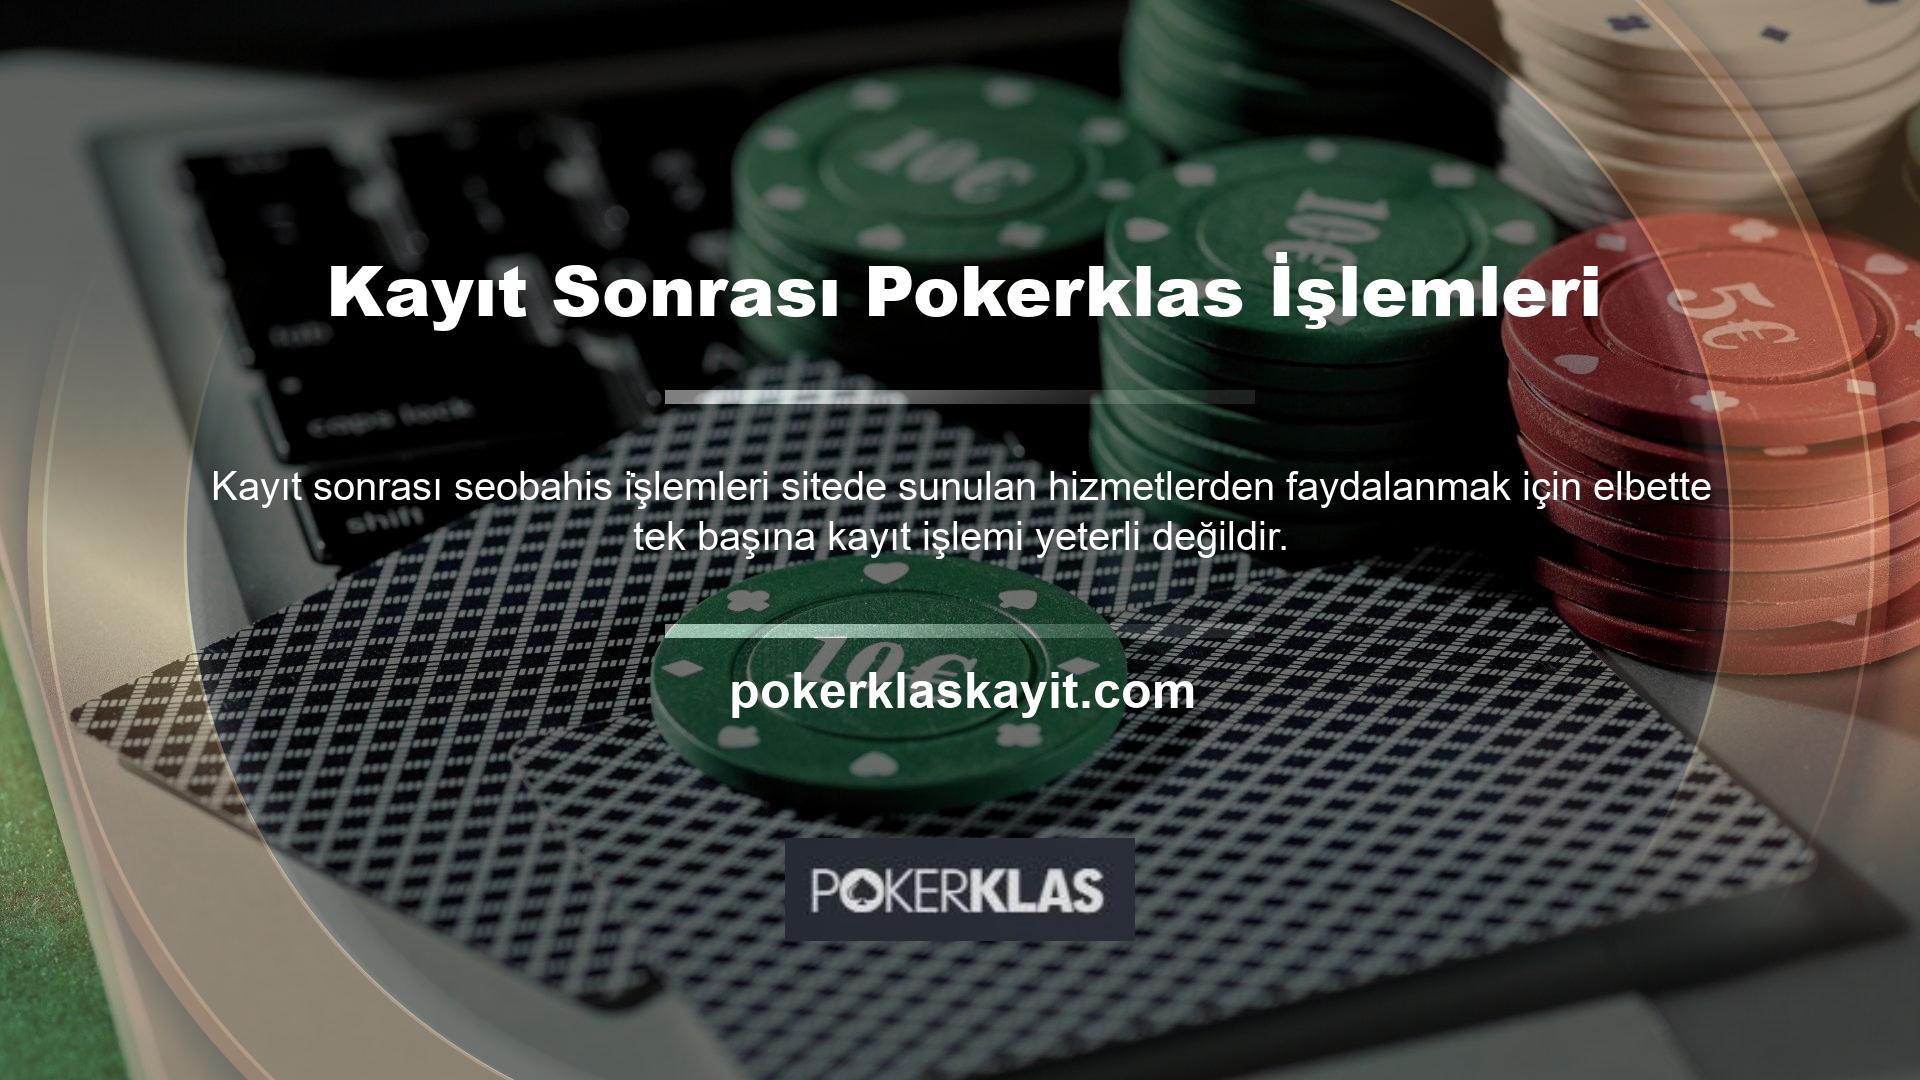 Pokerklas kayıt sonrası prosedürü aynı zamanda web sitesi için ödeme prosedürüdür